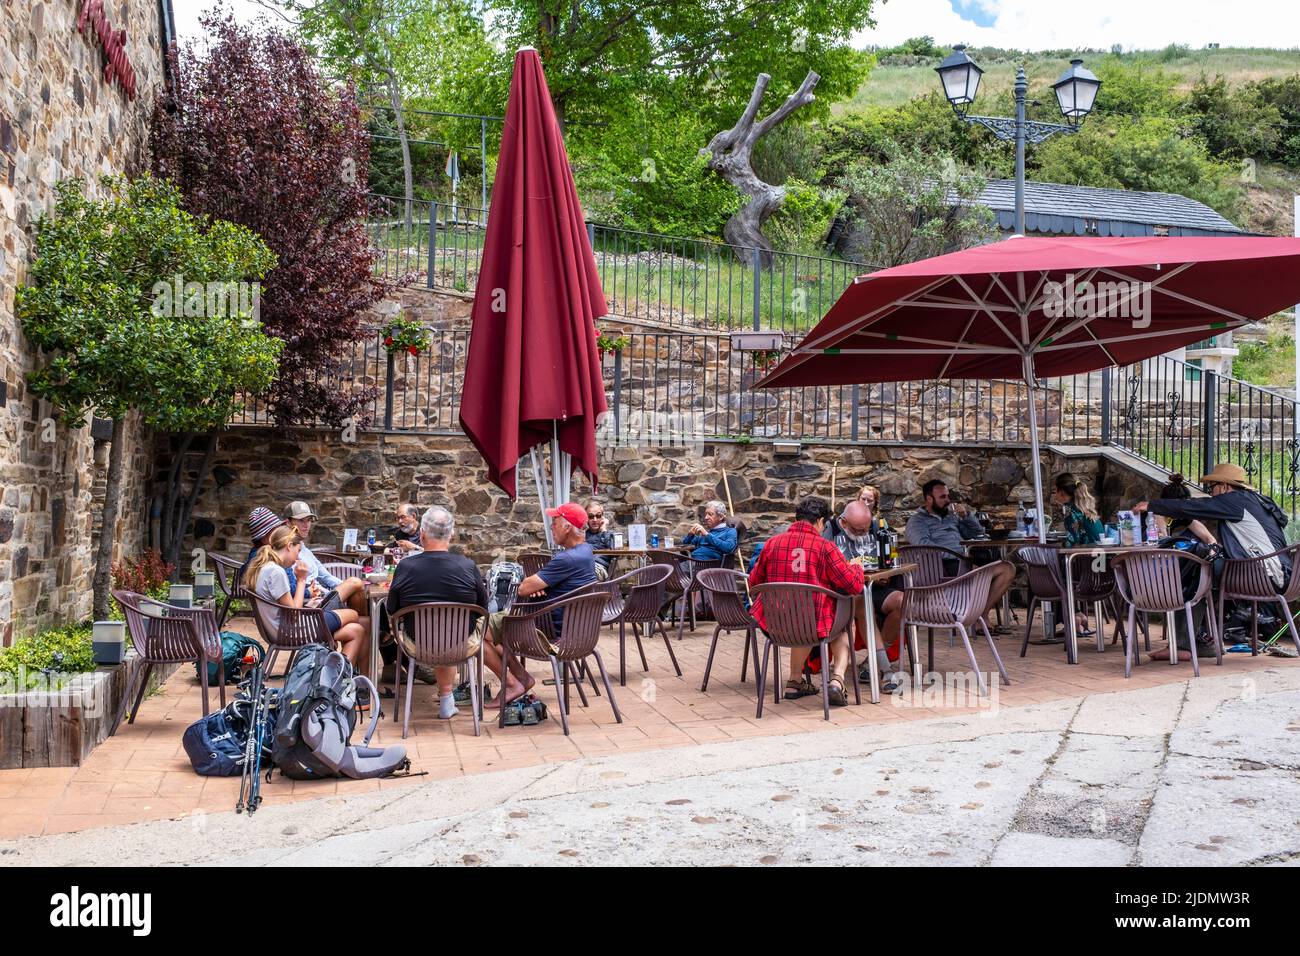 Spain, El Acebo, Castilla y Leon. Hikers at Outdoor Cafe Rest Stop. Stock Photo